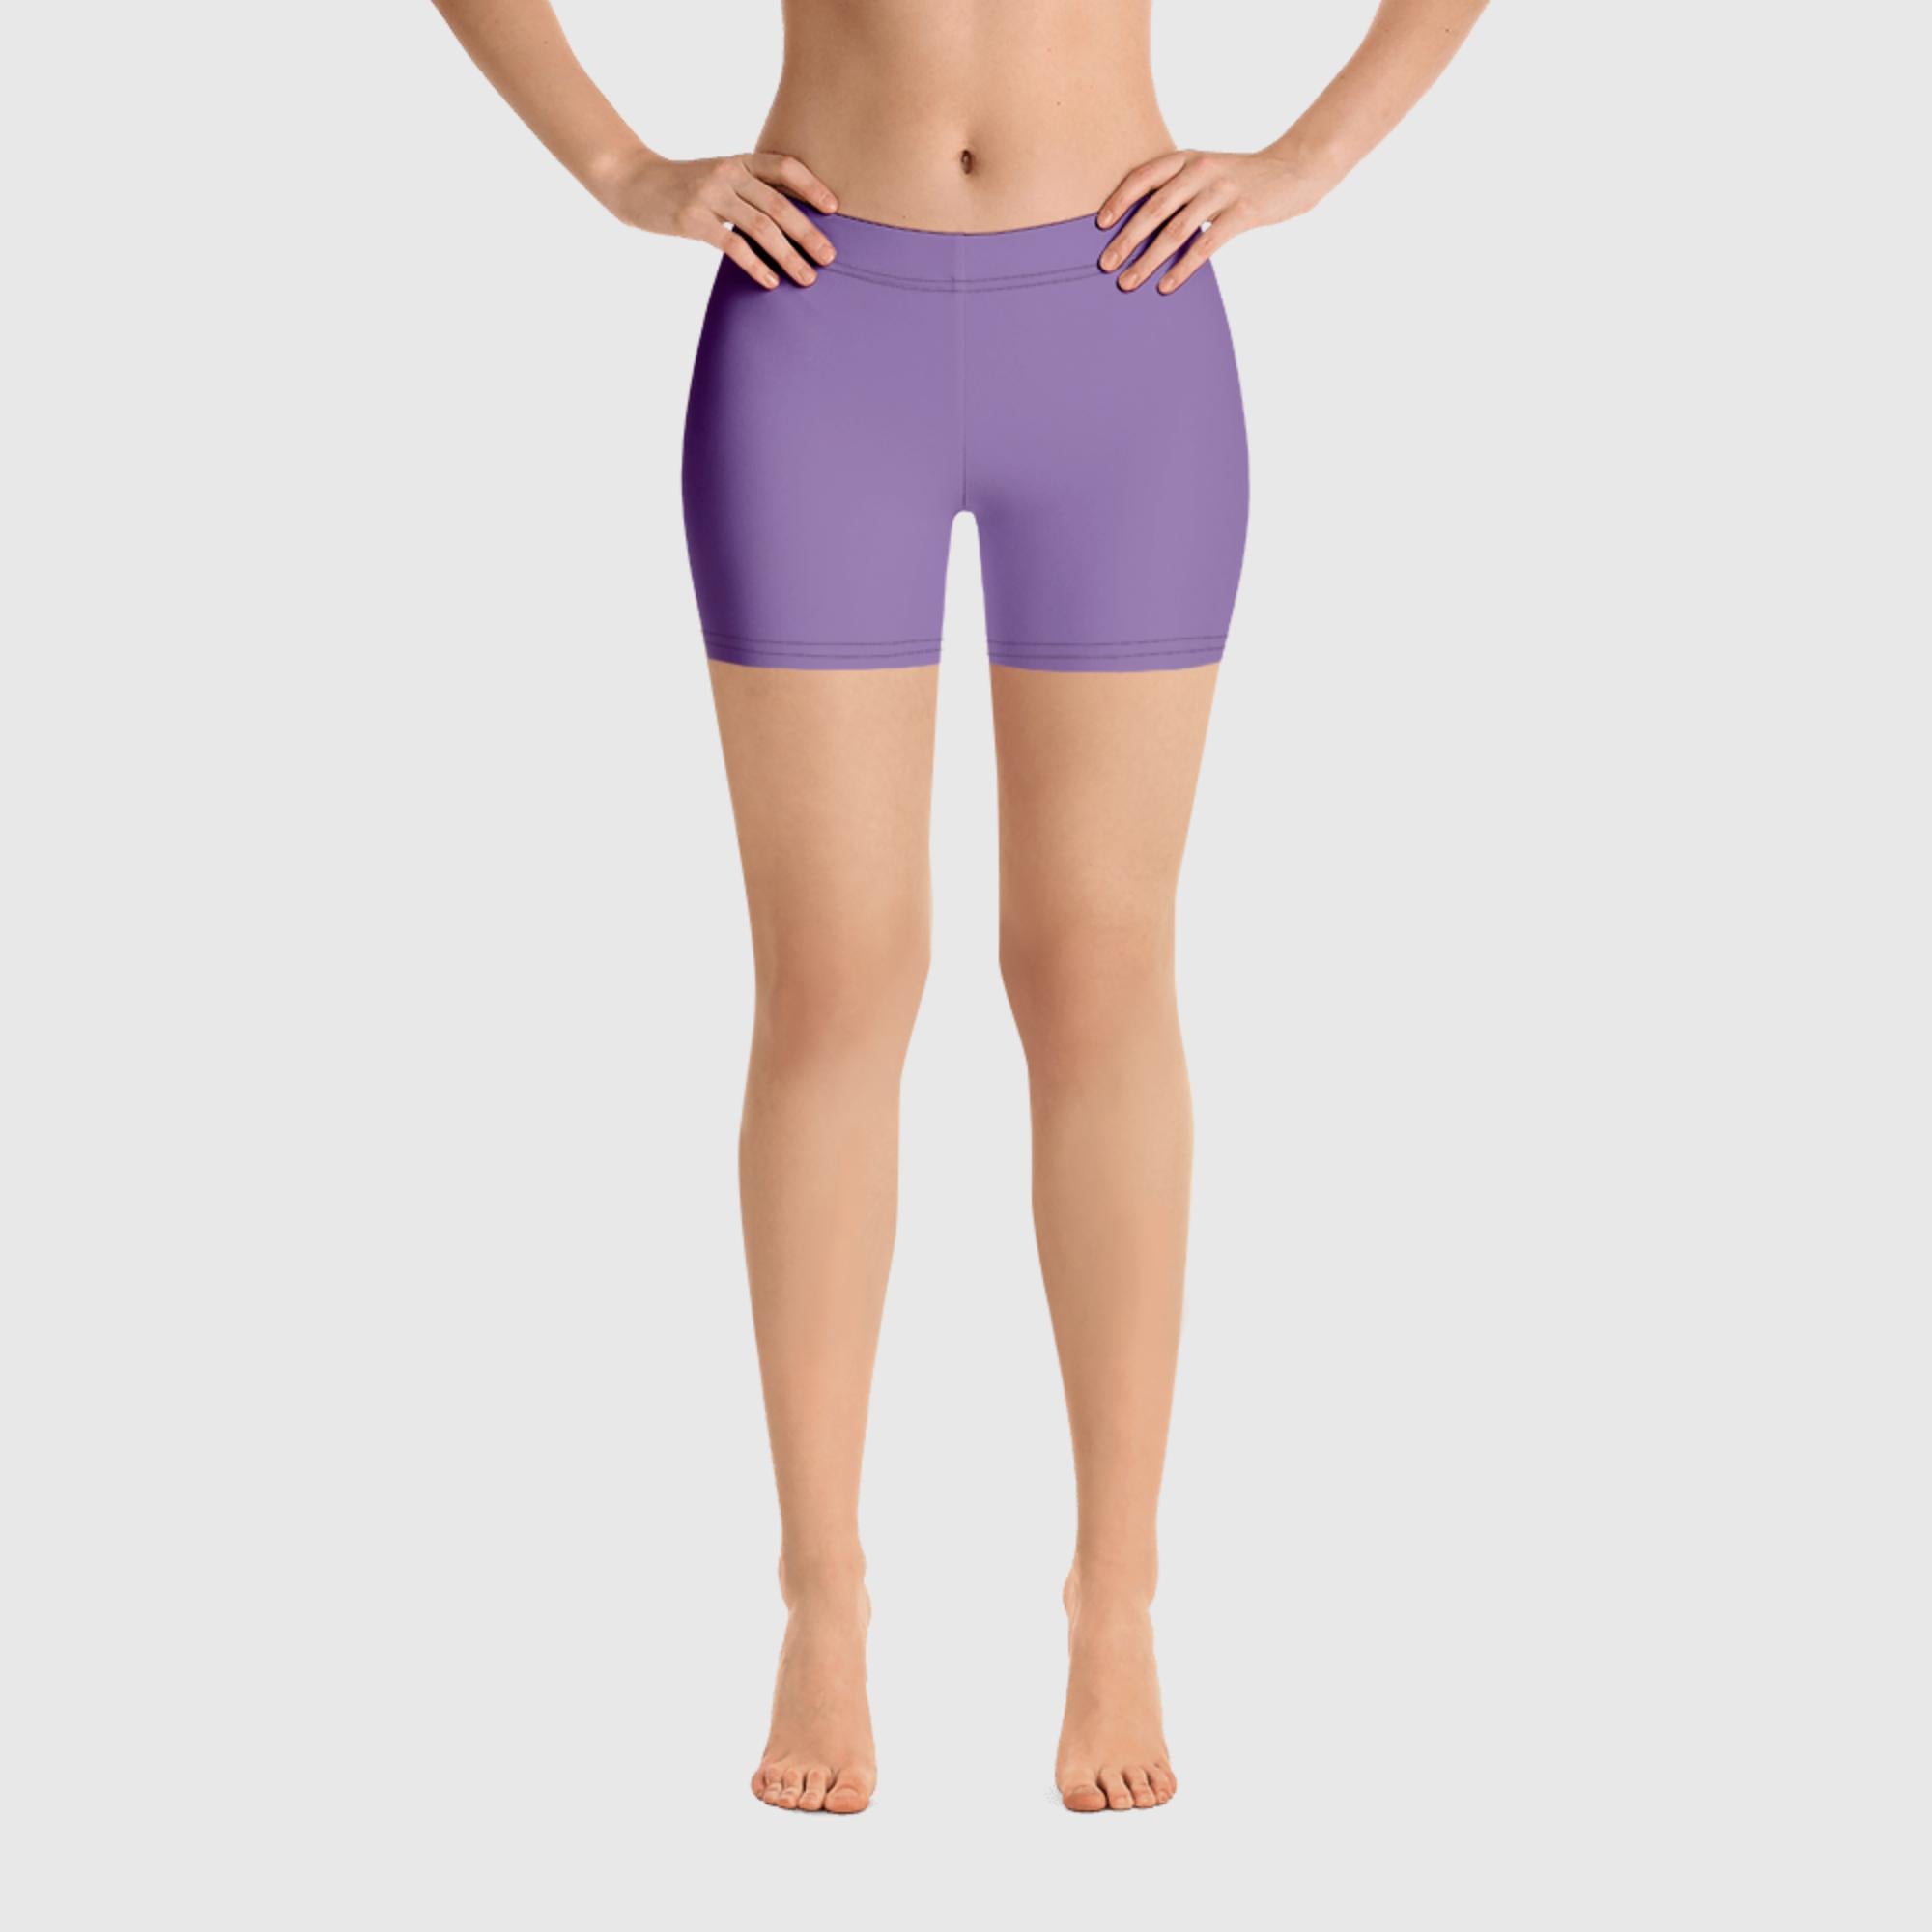 Women's Shorts - Purple - Sunset Harbor Clothing